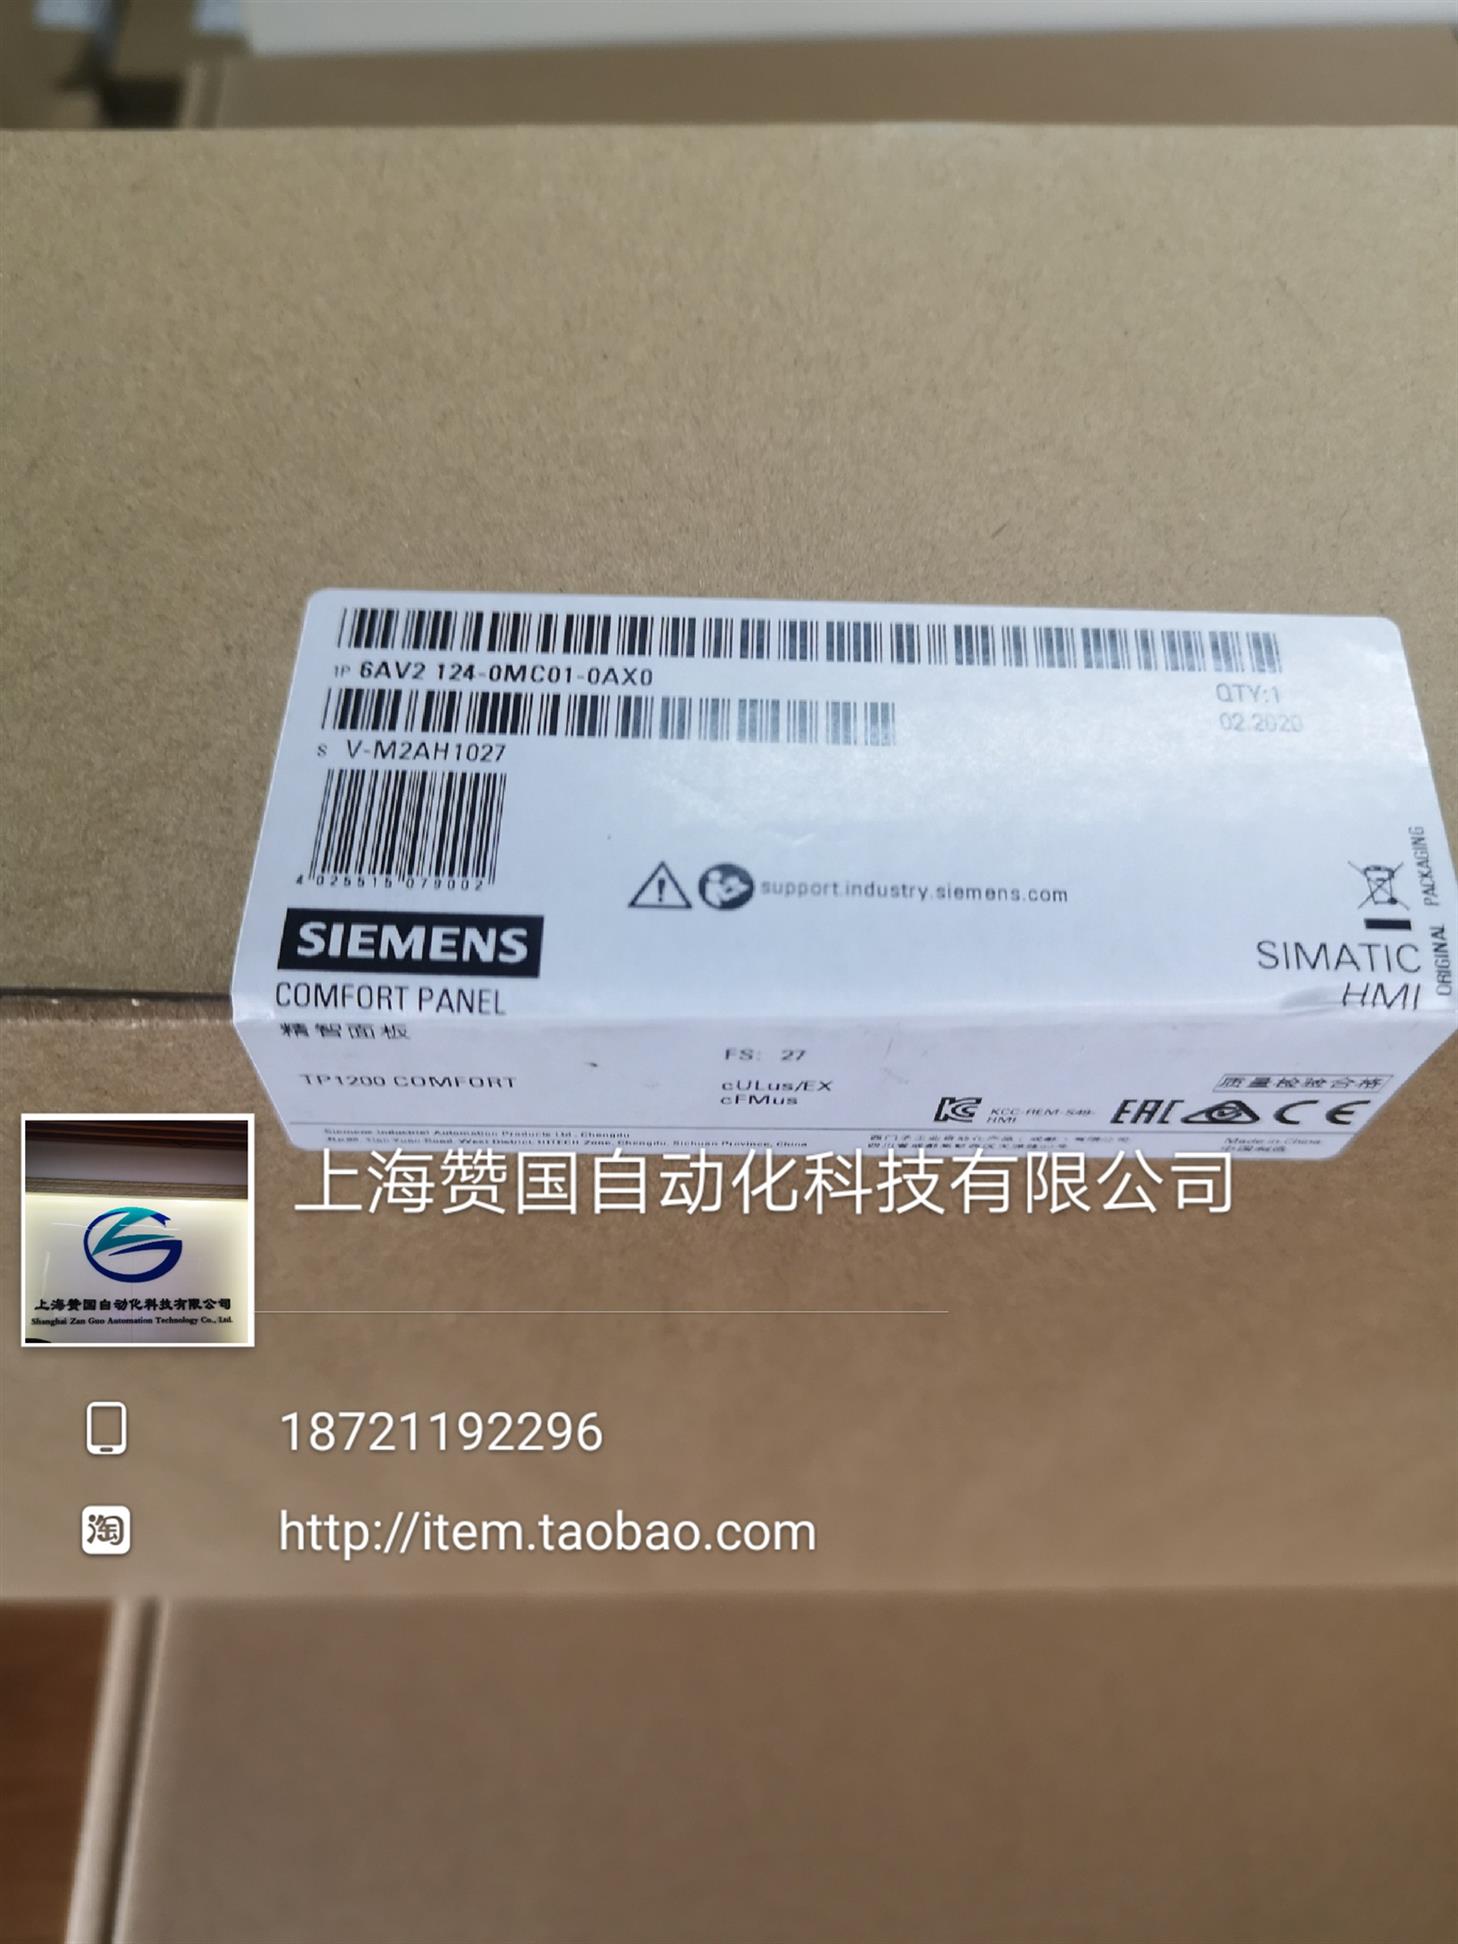 安徽上海赞国科技西门子S120电机模块优势商家供应商